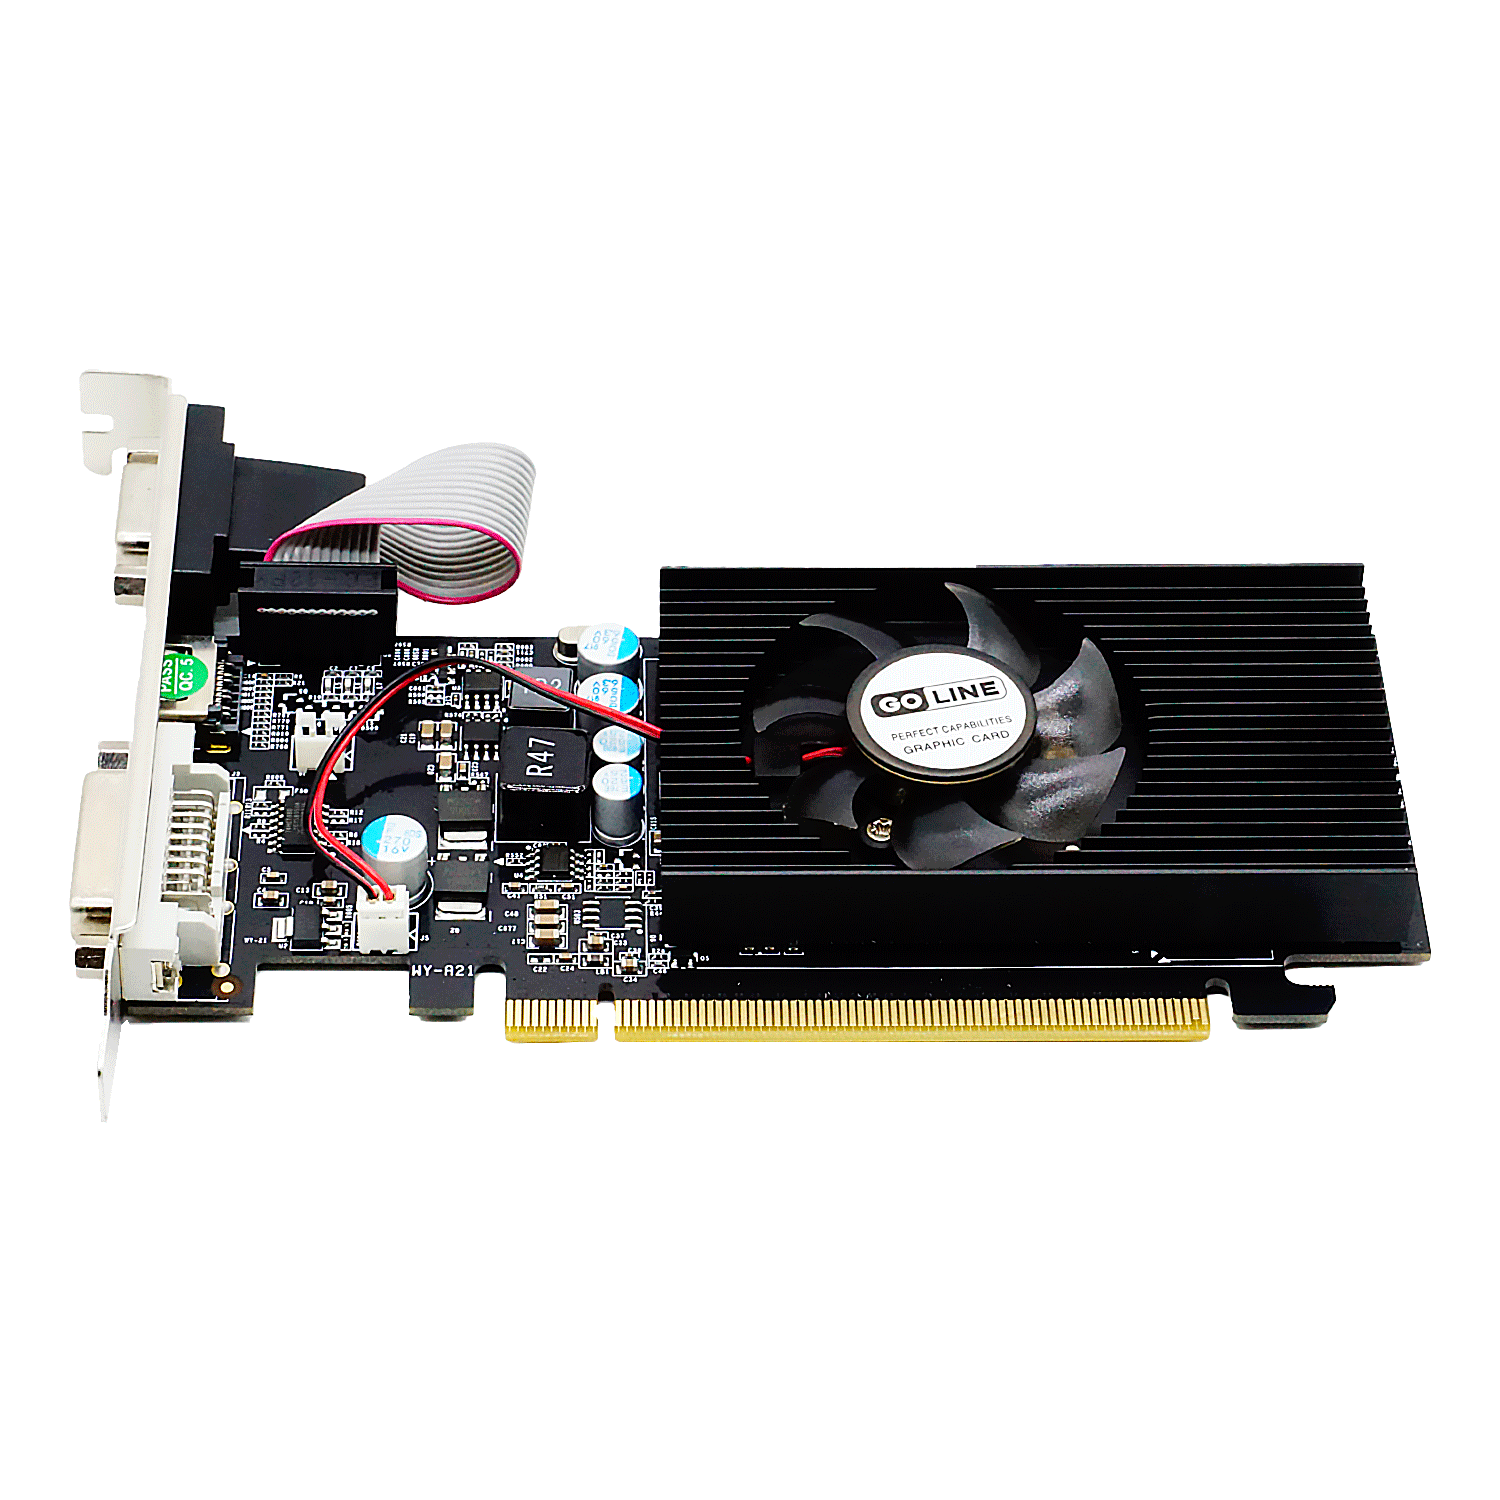 Placa de Vídeo Goline GT-210 1GB / GL-210-1D2 DDR2 / Low Profile - ( 1 Ano de Garantia)